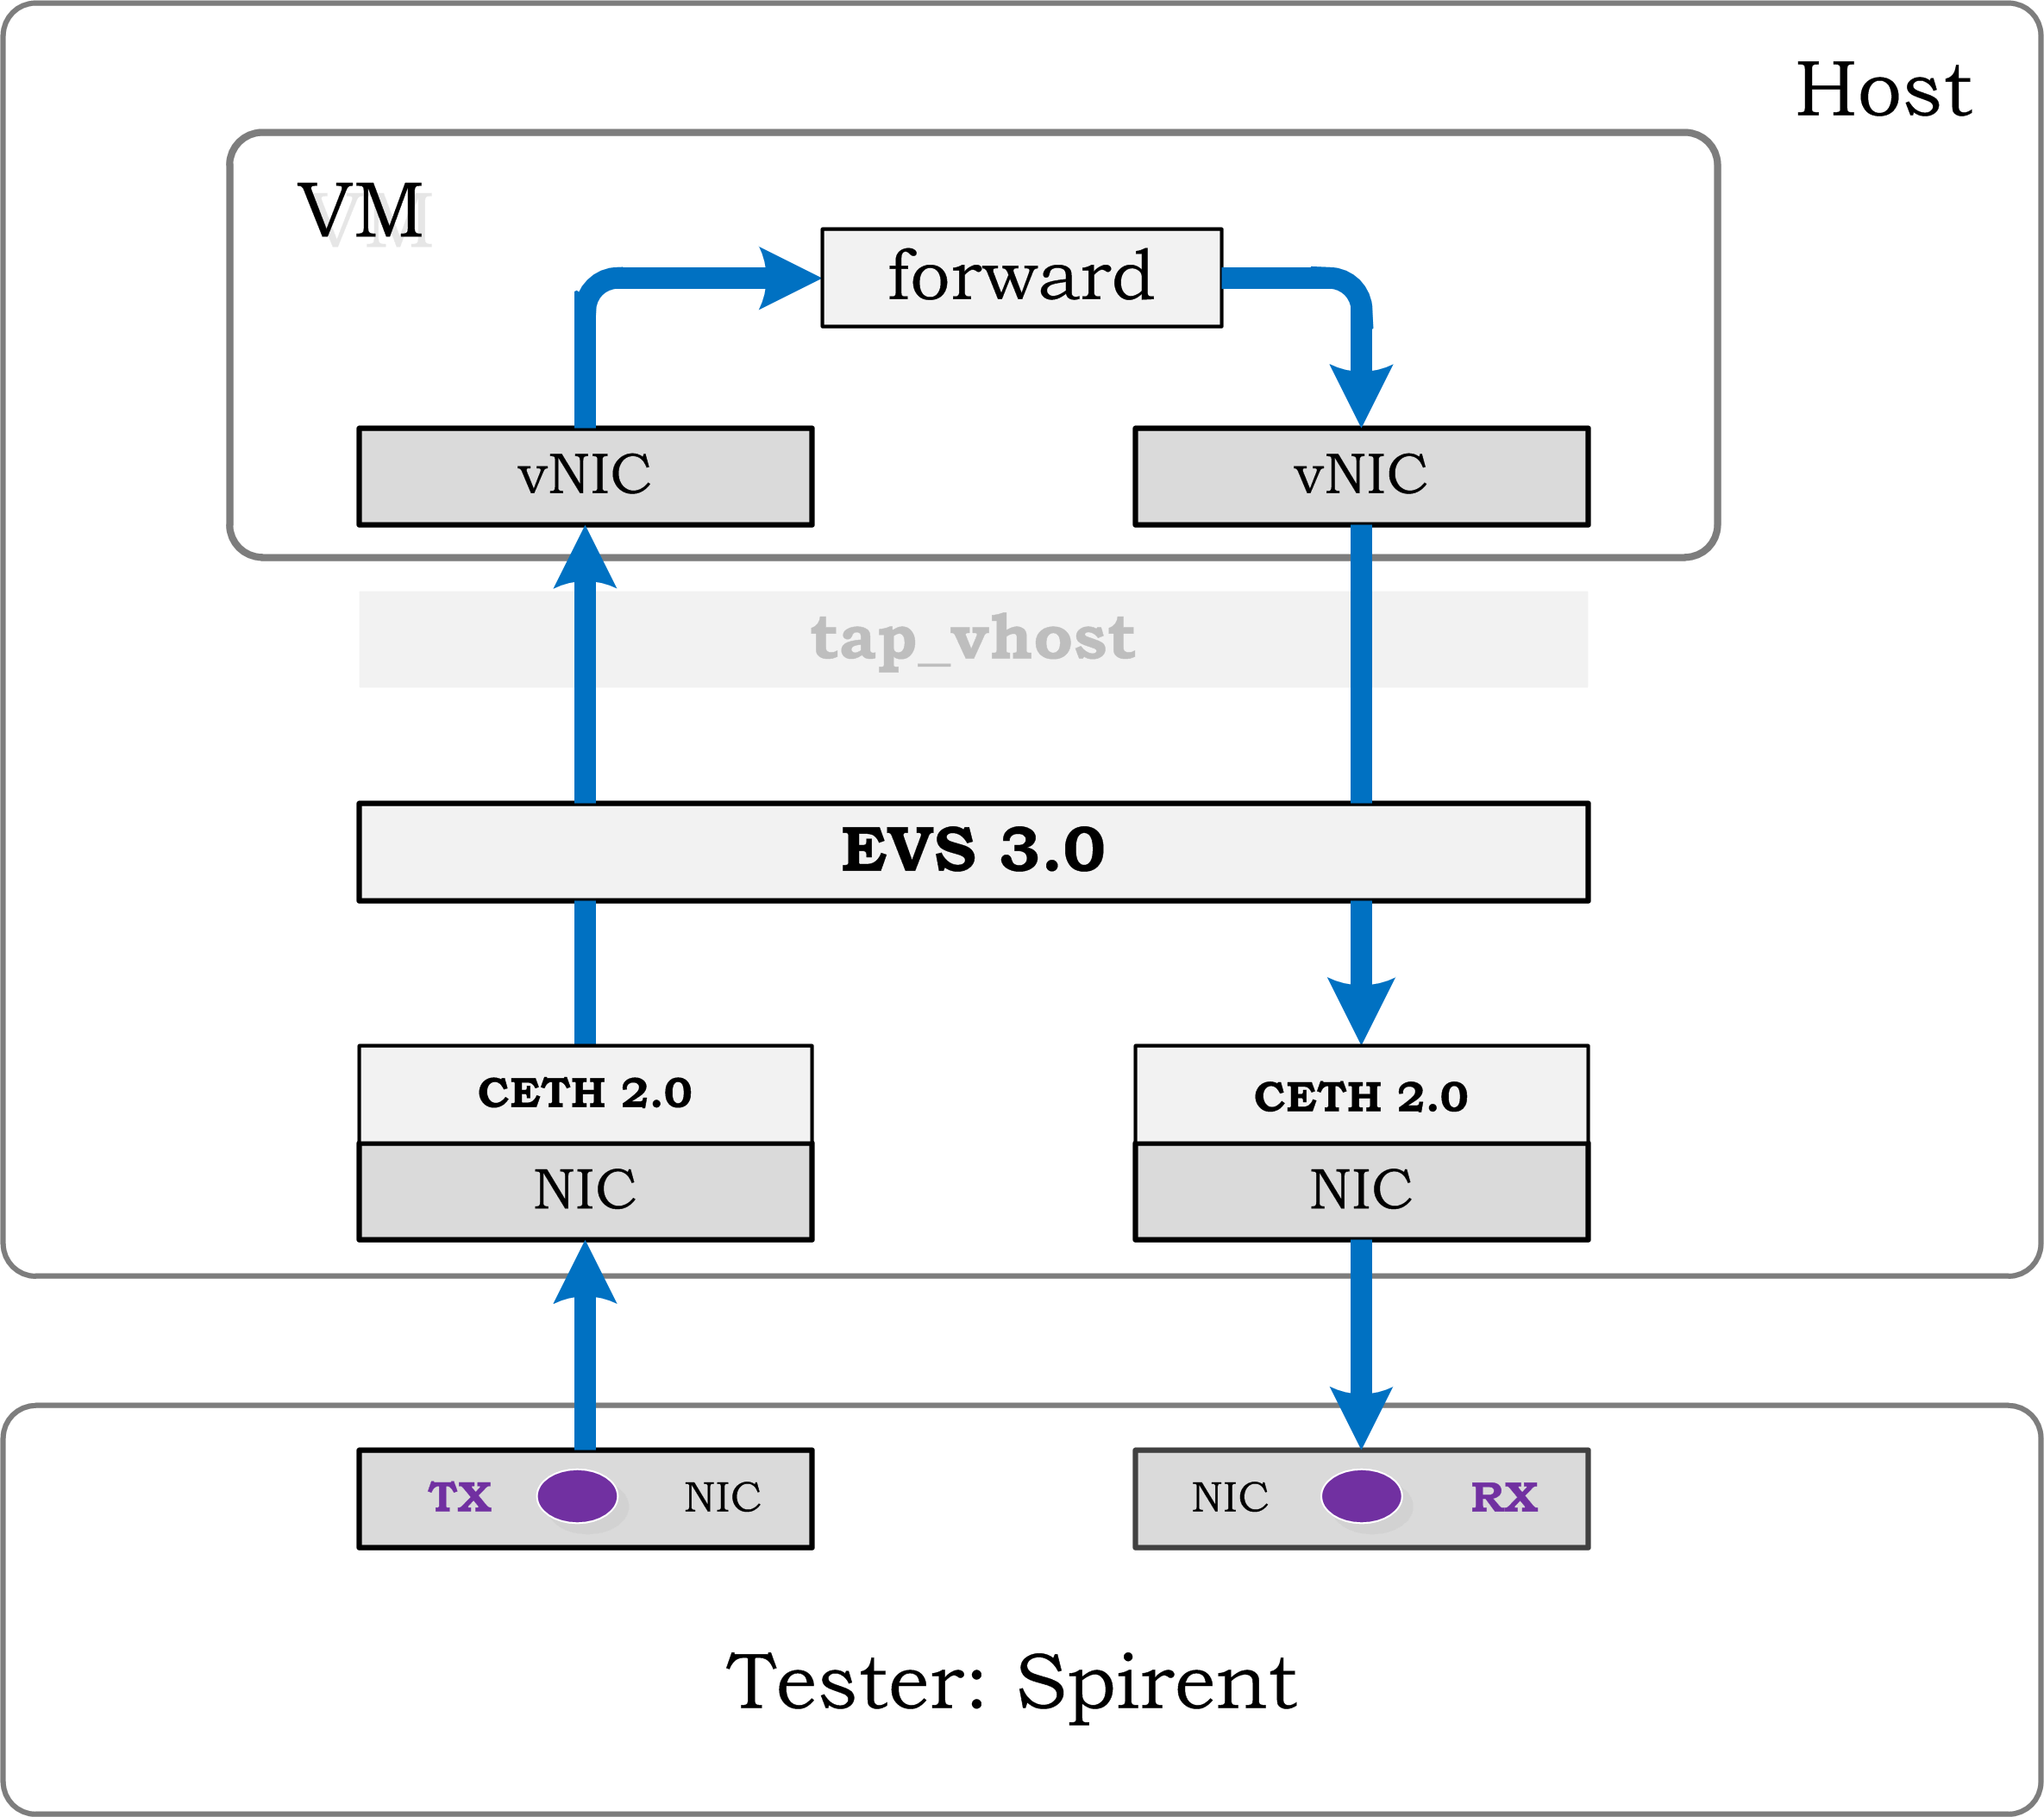 testsuites/vstf/vstf_scripts/vstf/controller/res/spirent/Tn-1v.gif